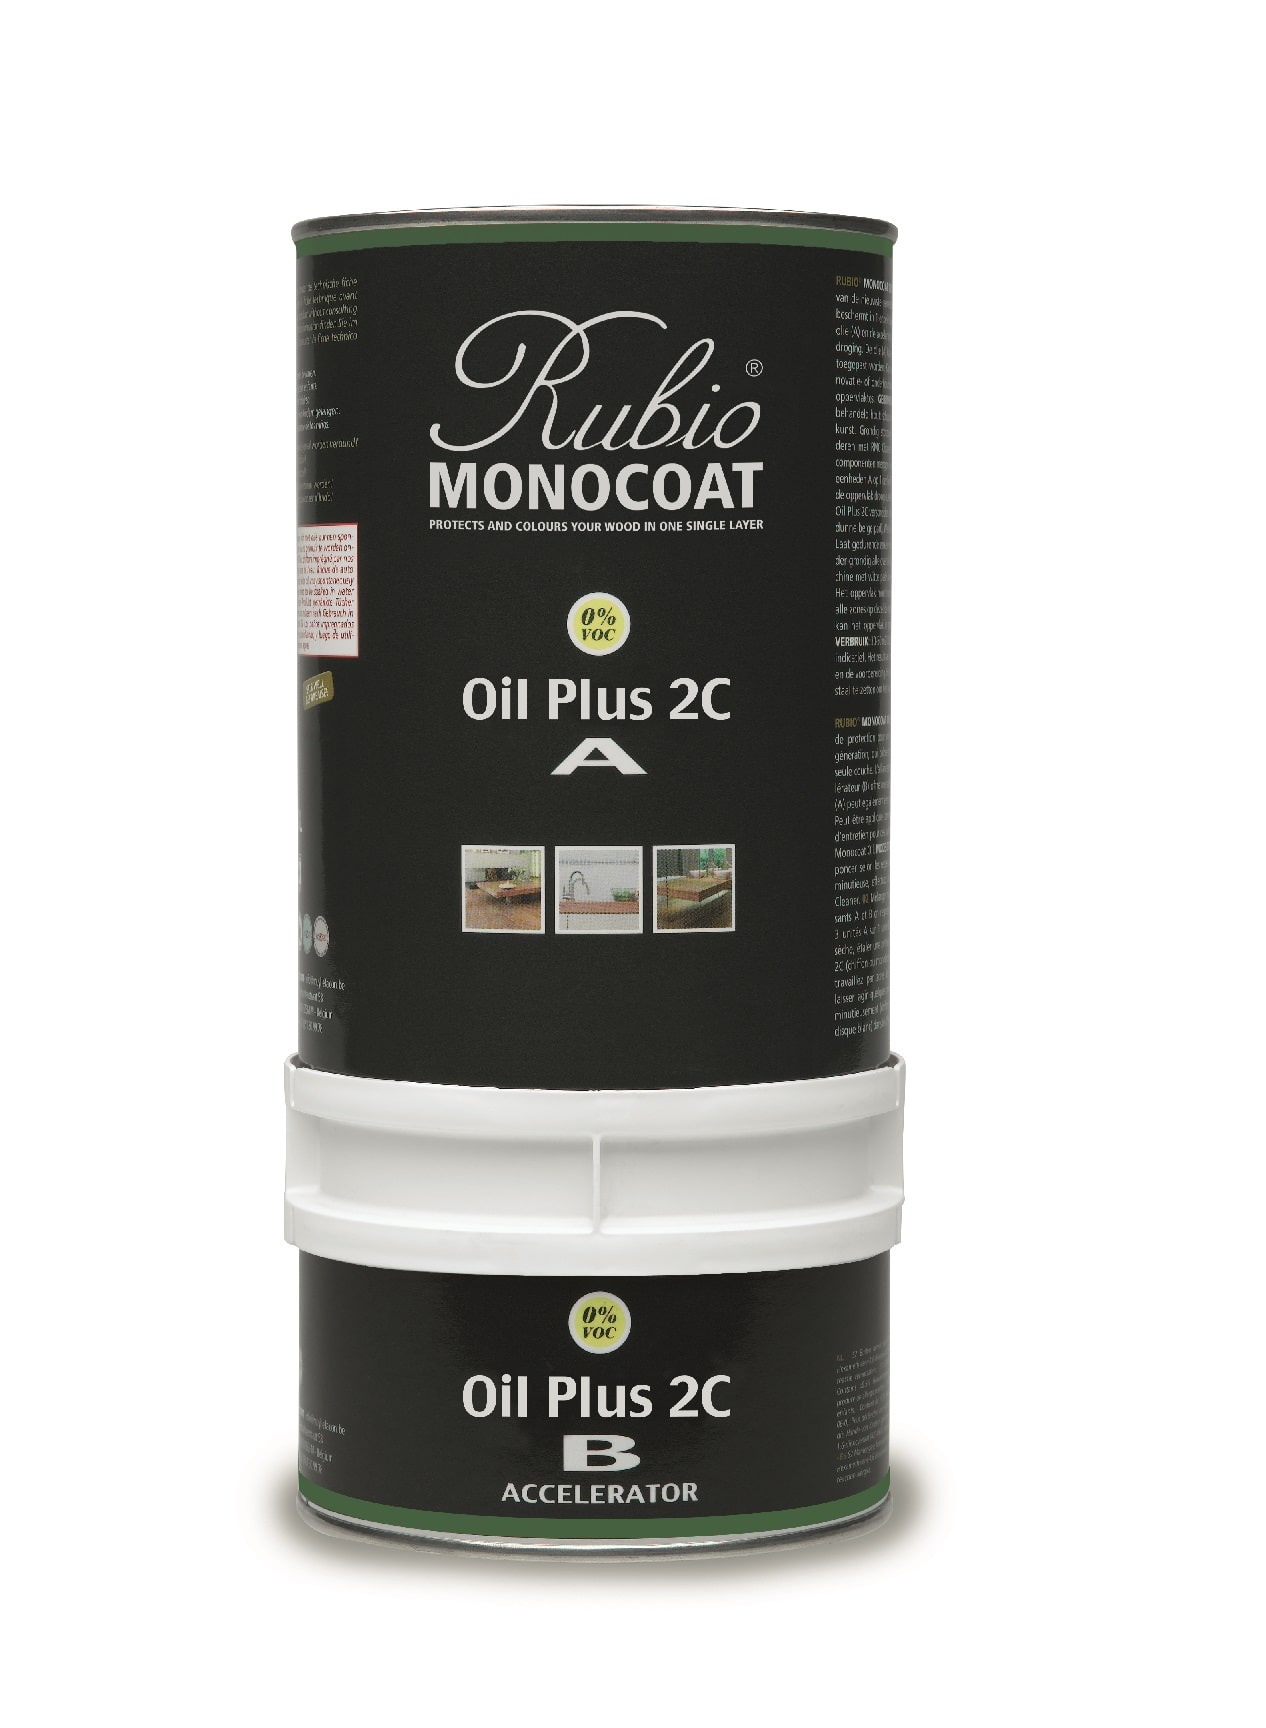 Billede af Rubio Monocoat olie Plus 2C Pine 275 ml inkl. accelerator 75 ml.